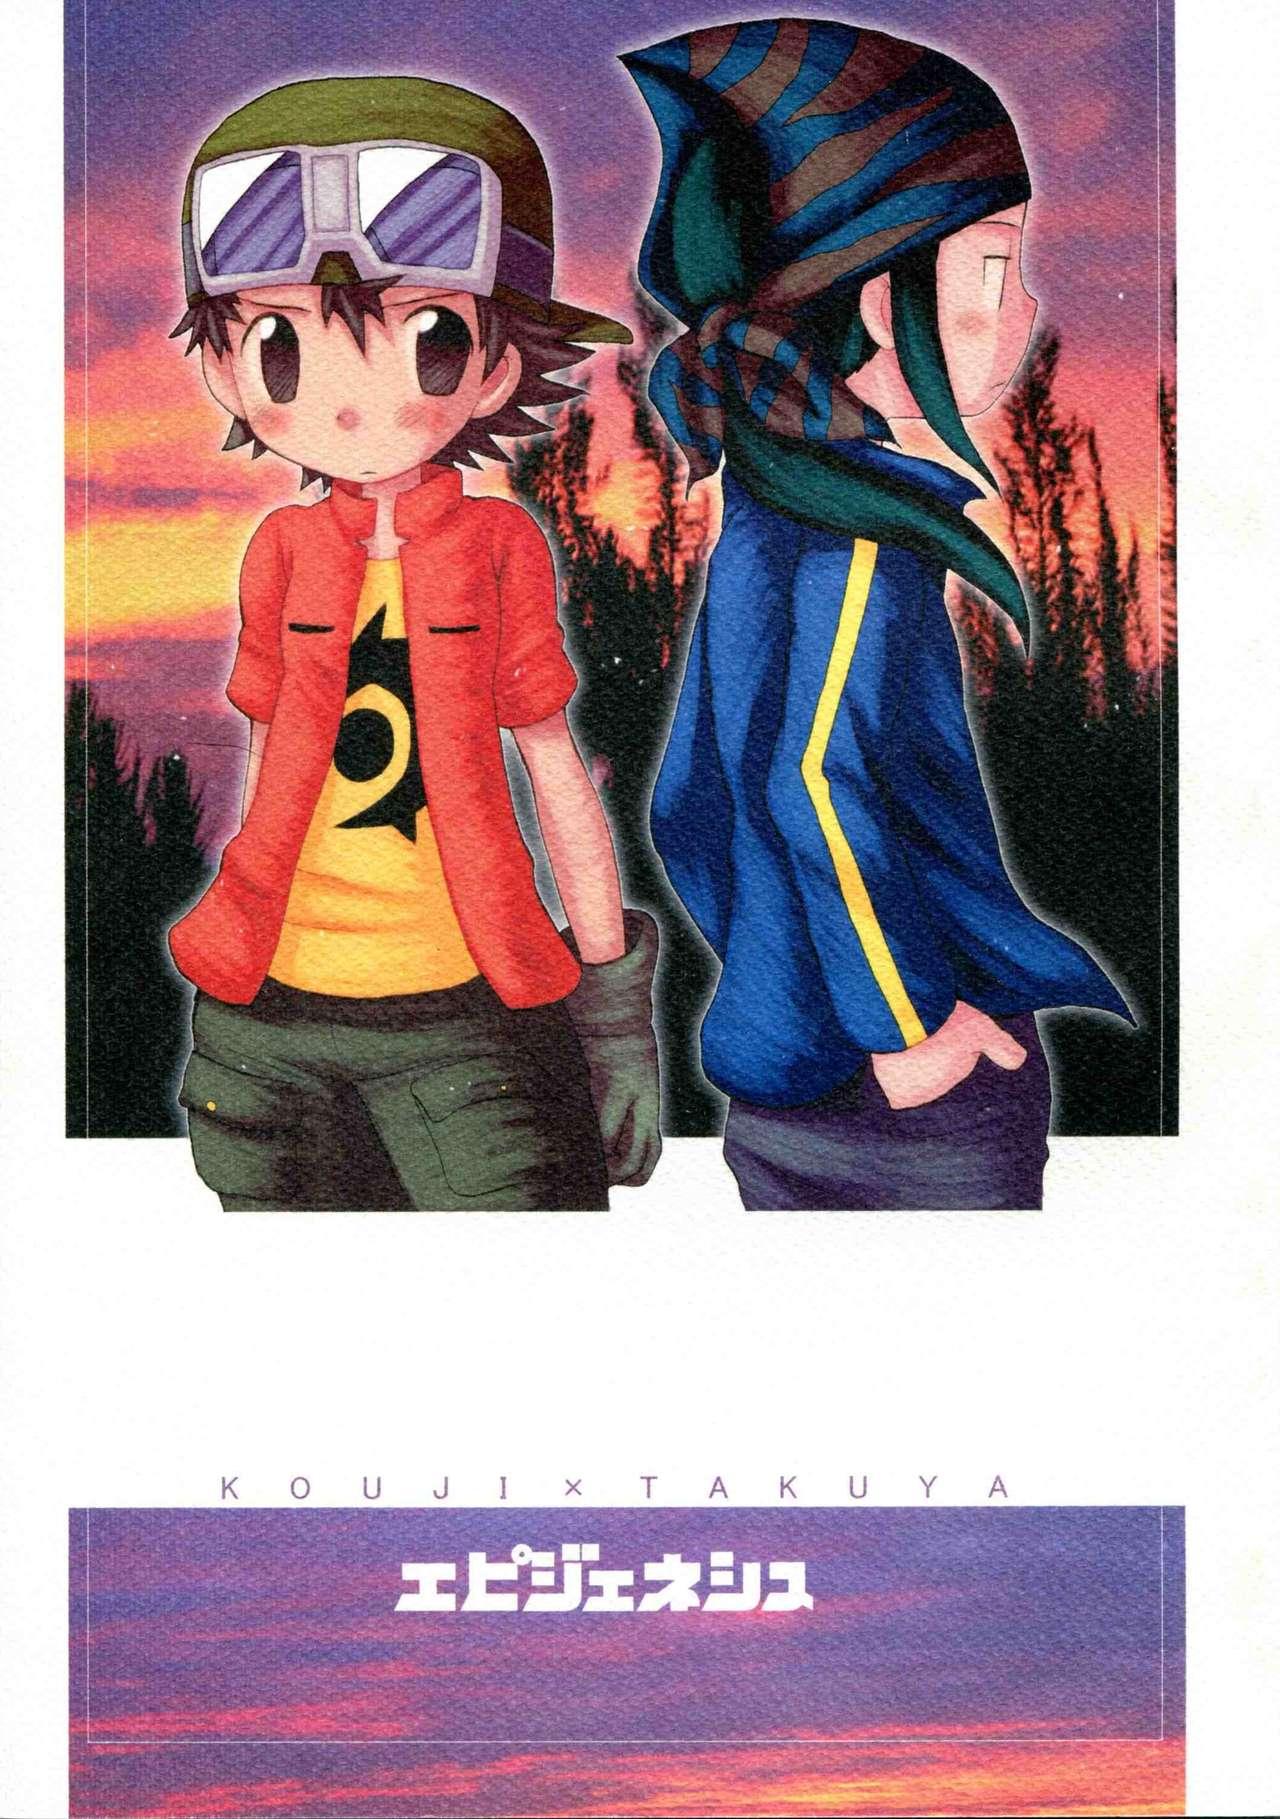 Ruiva Epigenesis - Digimon frontier Sofa - Page 1